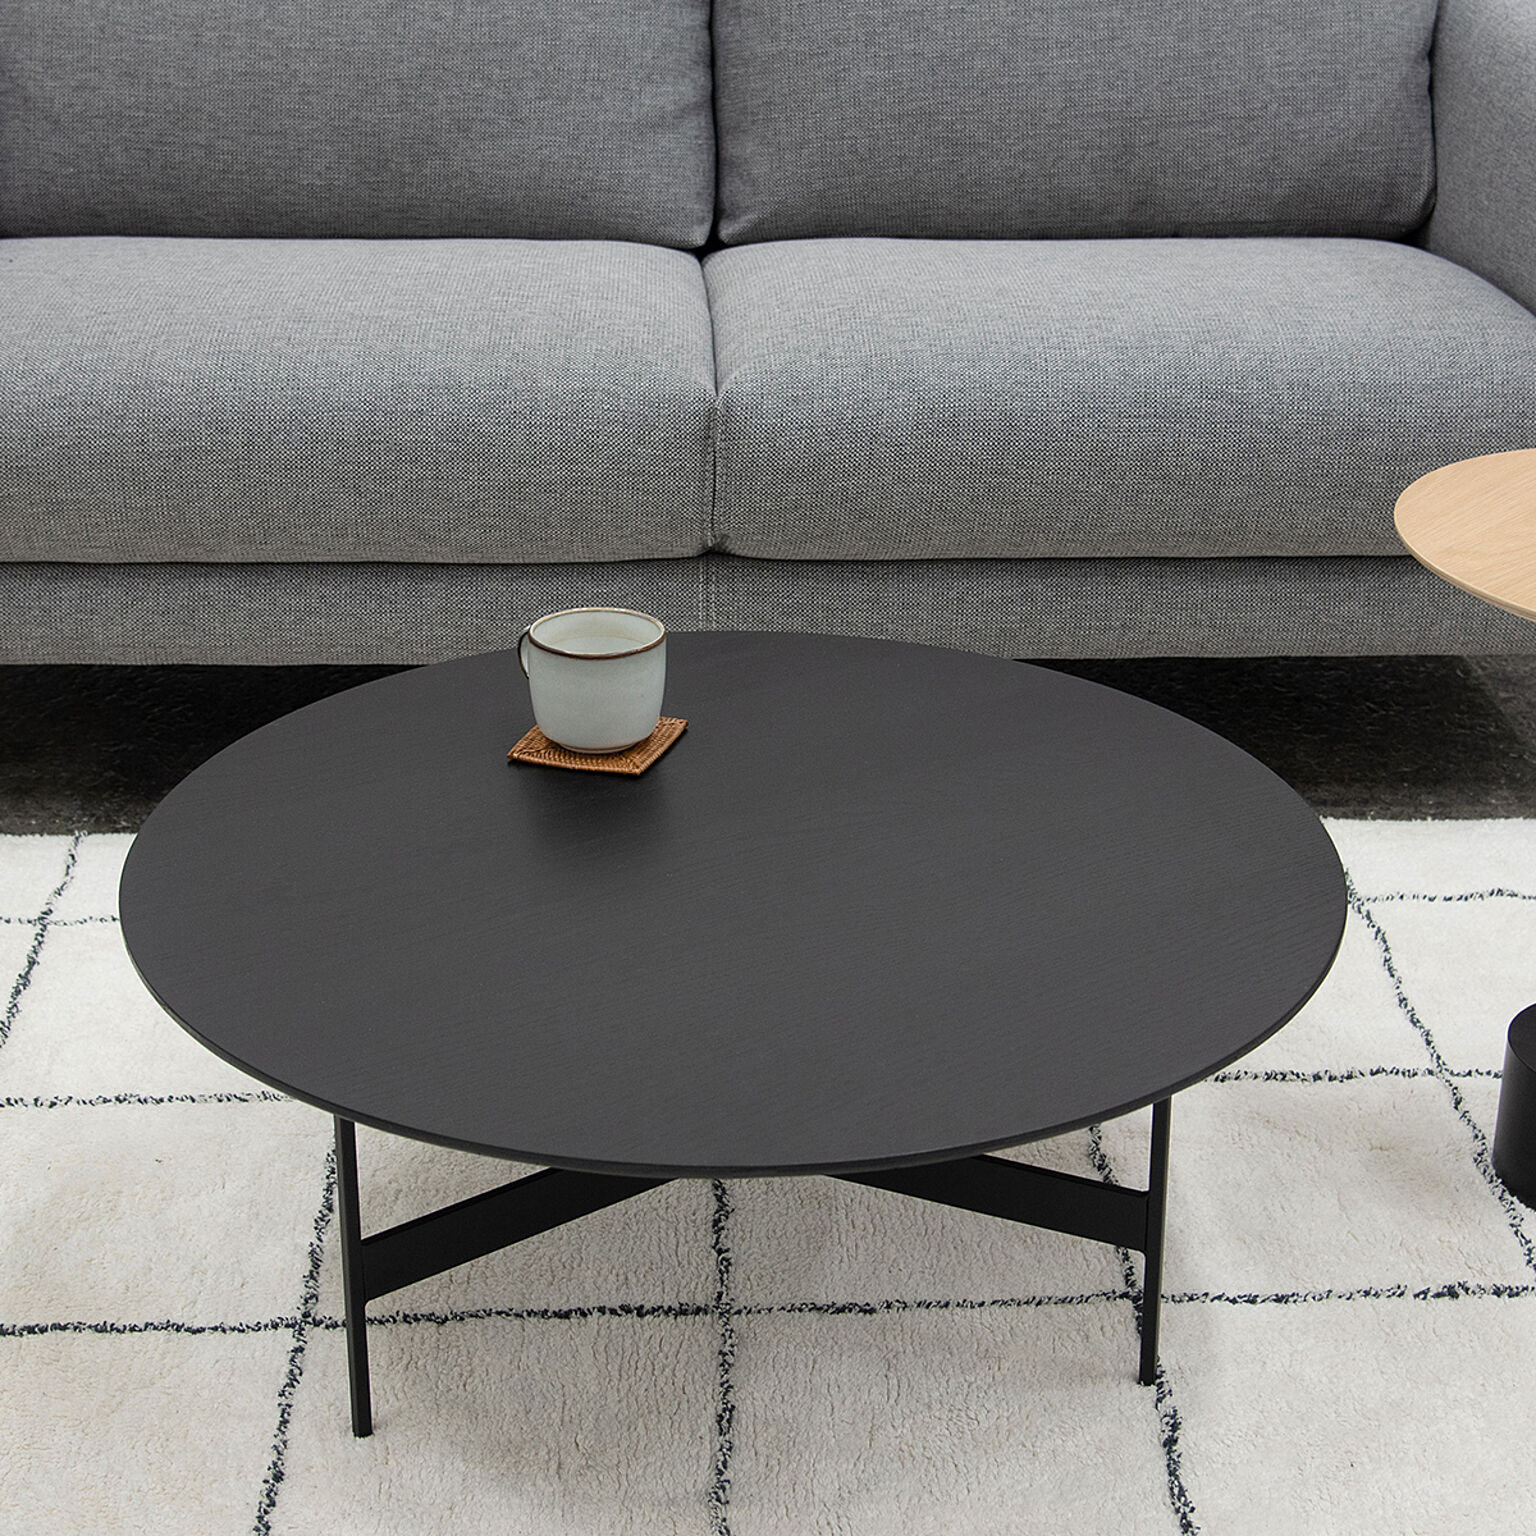 センターテーブル テーブル ローテーブル ラウンド 丸型 円形 コンパクト 丸テーブル ブラック スチール脚 アイアン モダン インダストリアル ソファ 座椅子